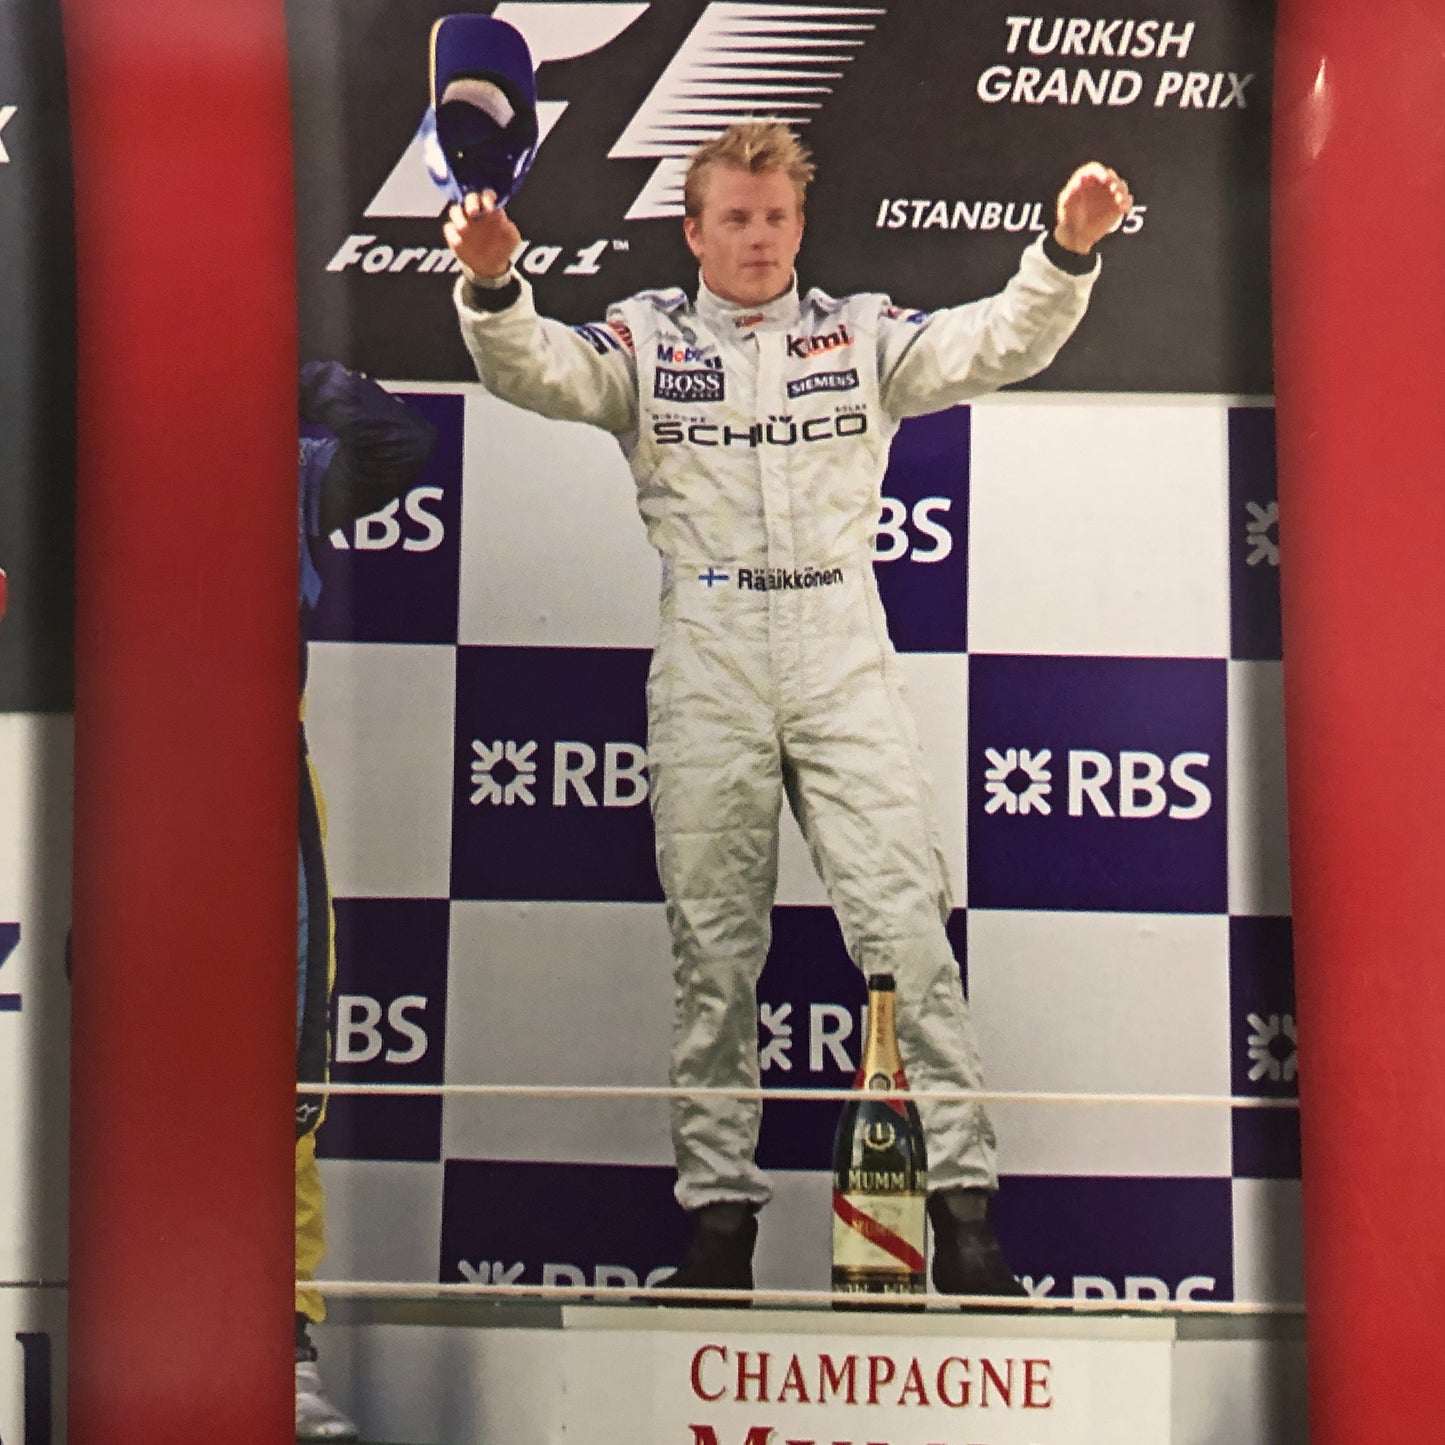 Champagne MUMM, Poster Stagione F1 Anno 2005 Primo Mondiale di Fernando Alonso Renault